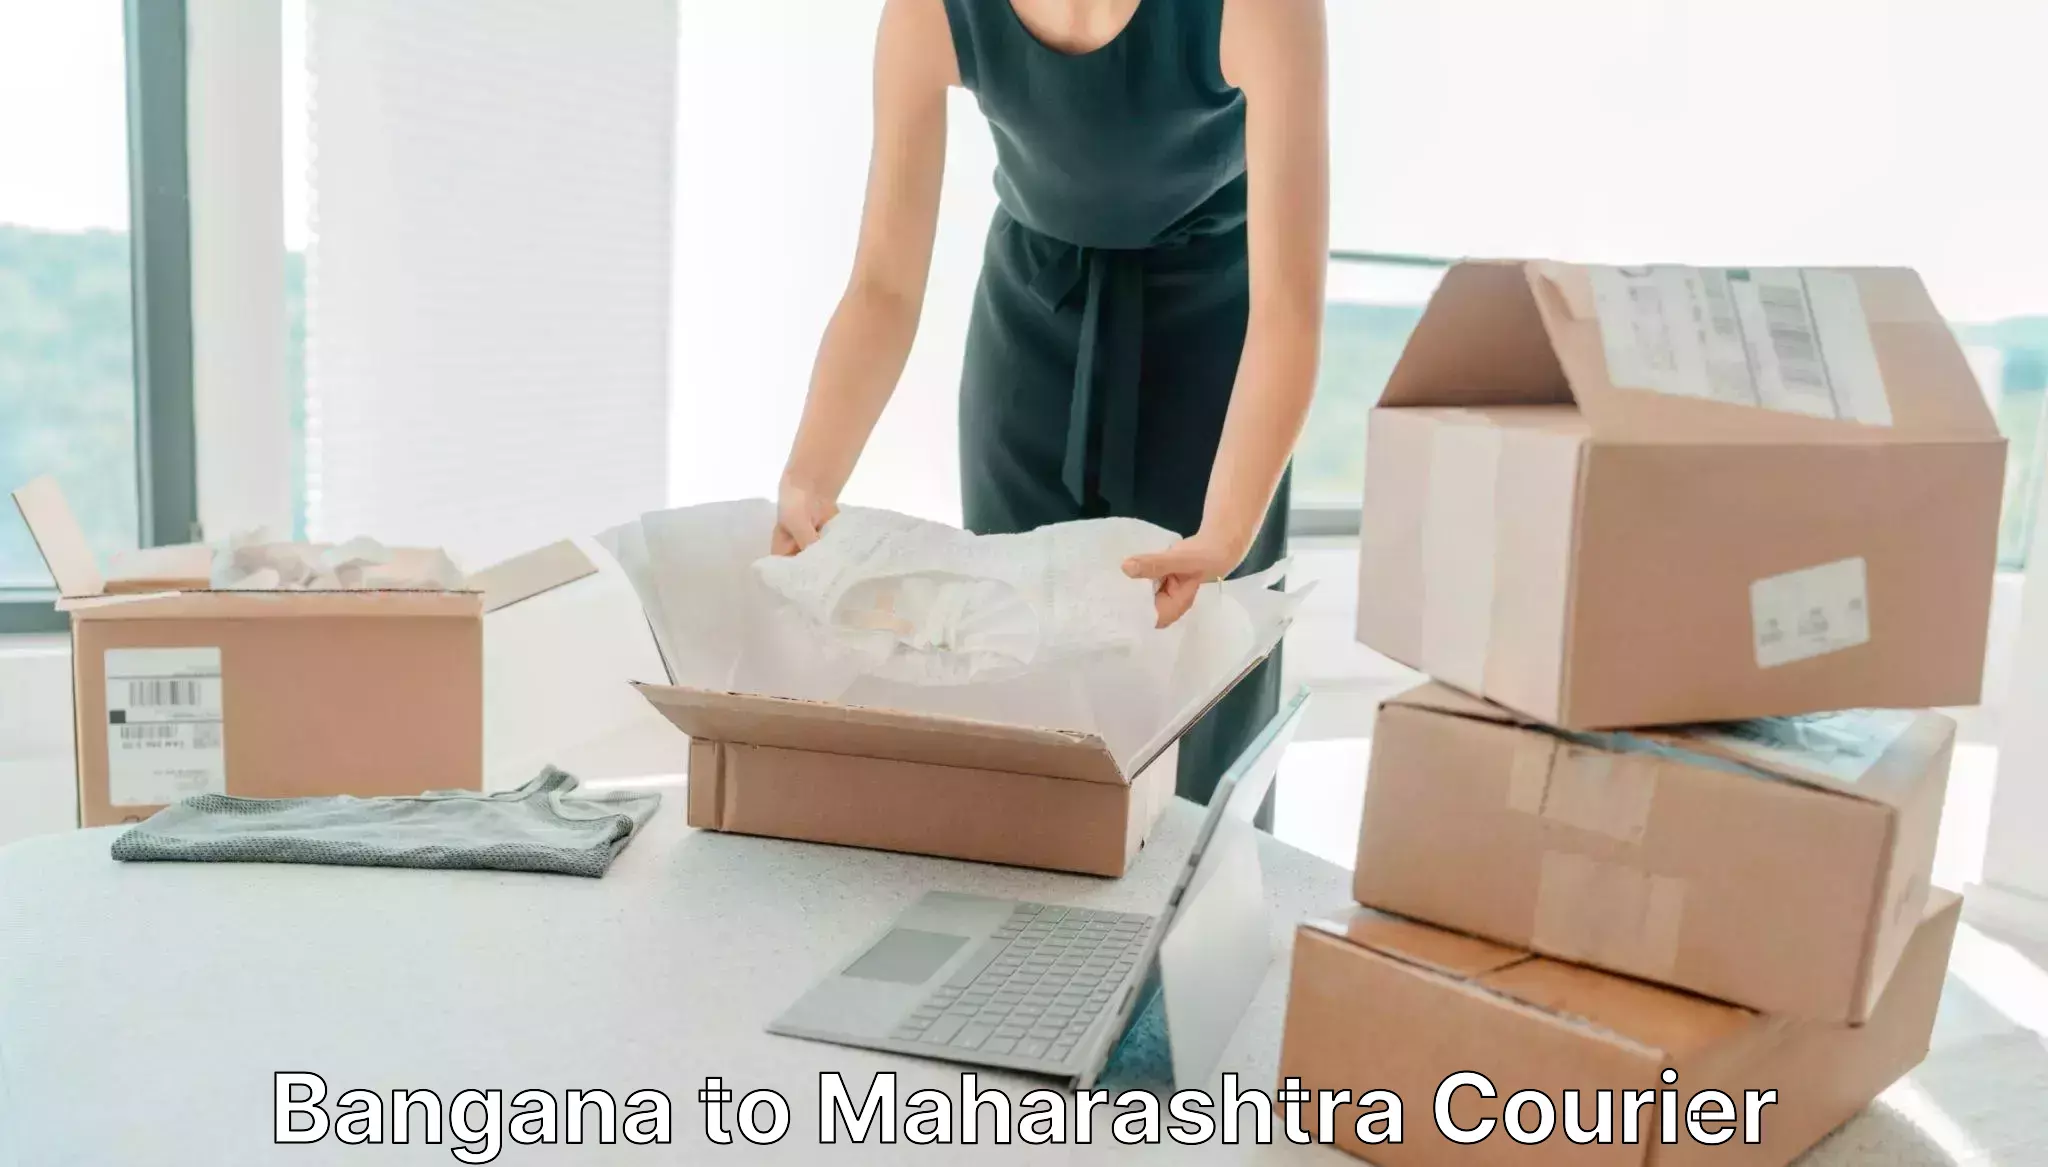 Next day courier Bangana to Maharashtra